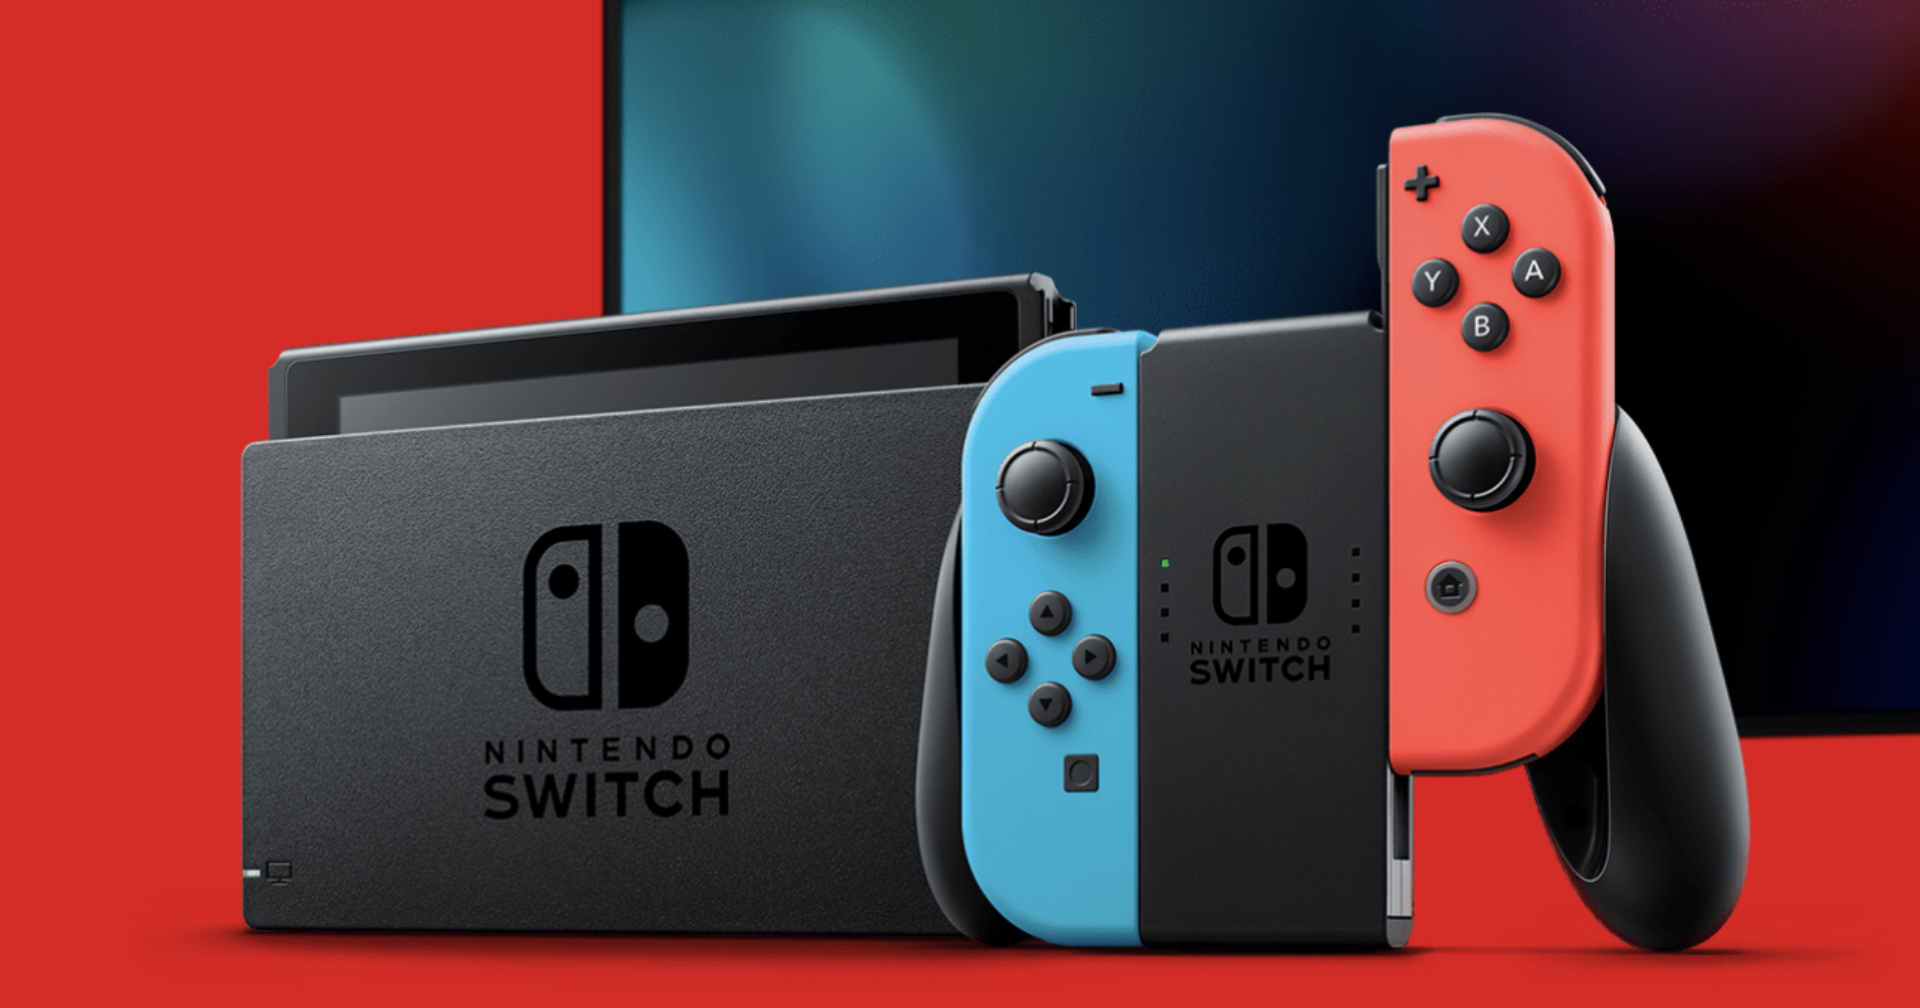 ลือ Nintendo เตรียมเปิดตัว Switch Pro รุ่นใหม่ หน้าจอ OLED ขนาด 7 นิ้ว